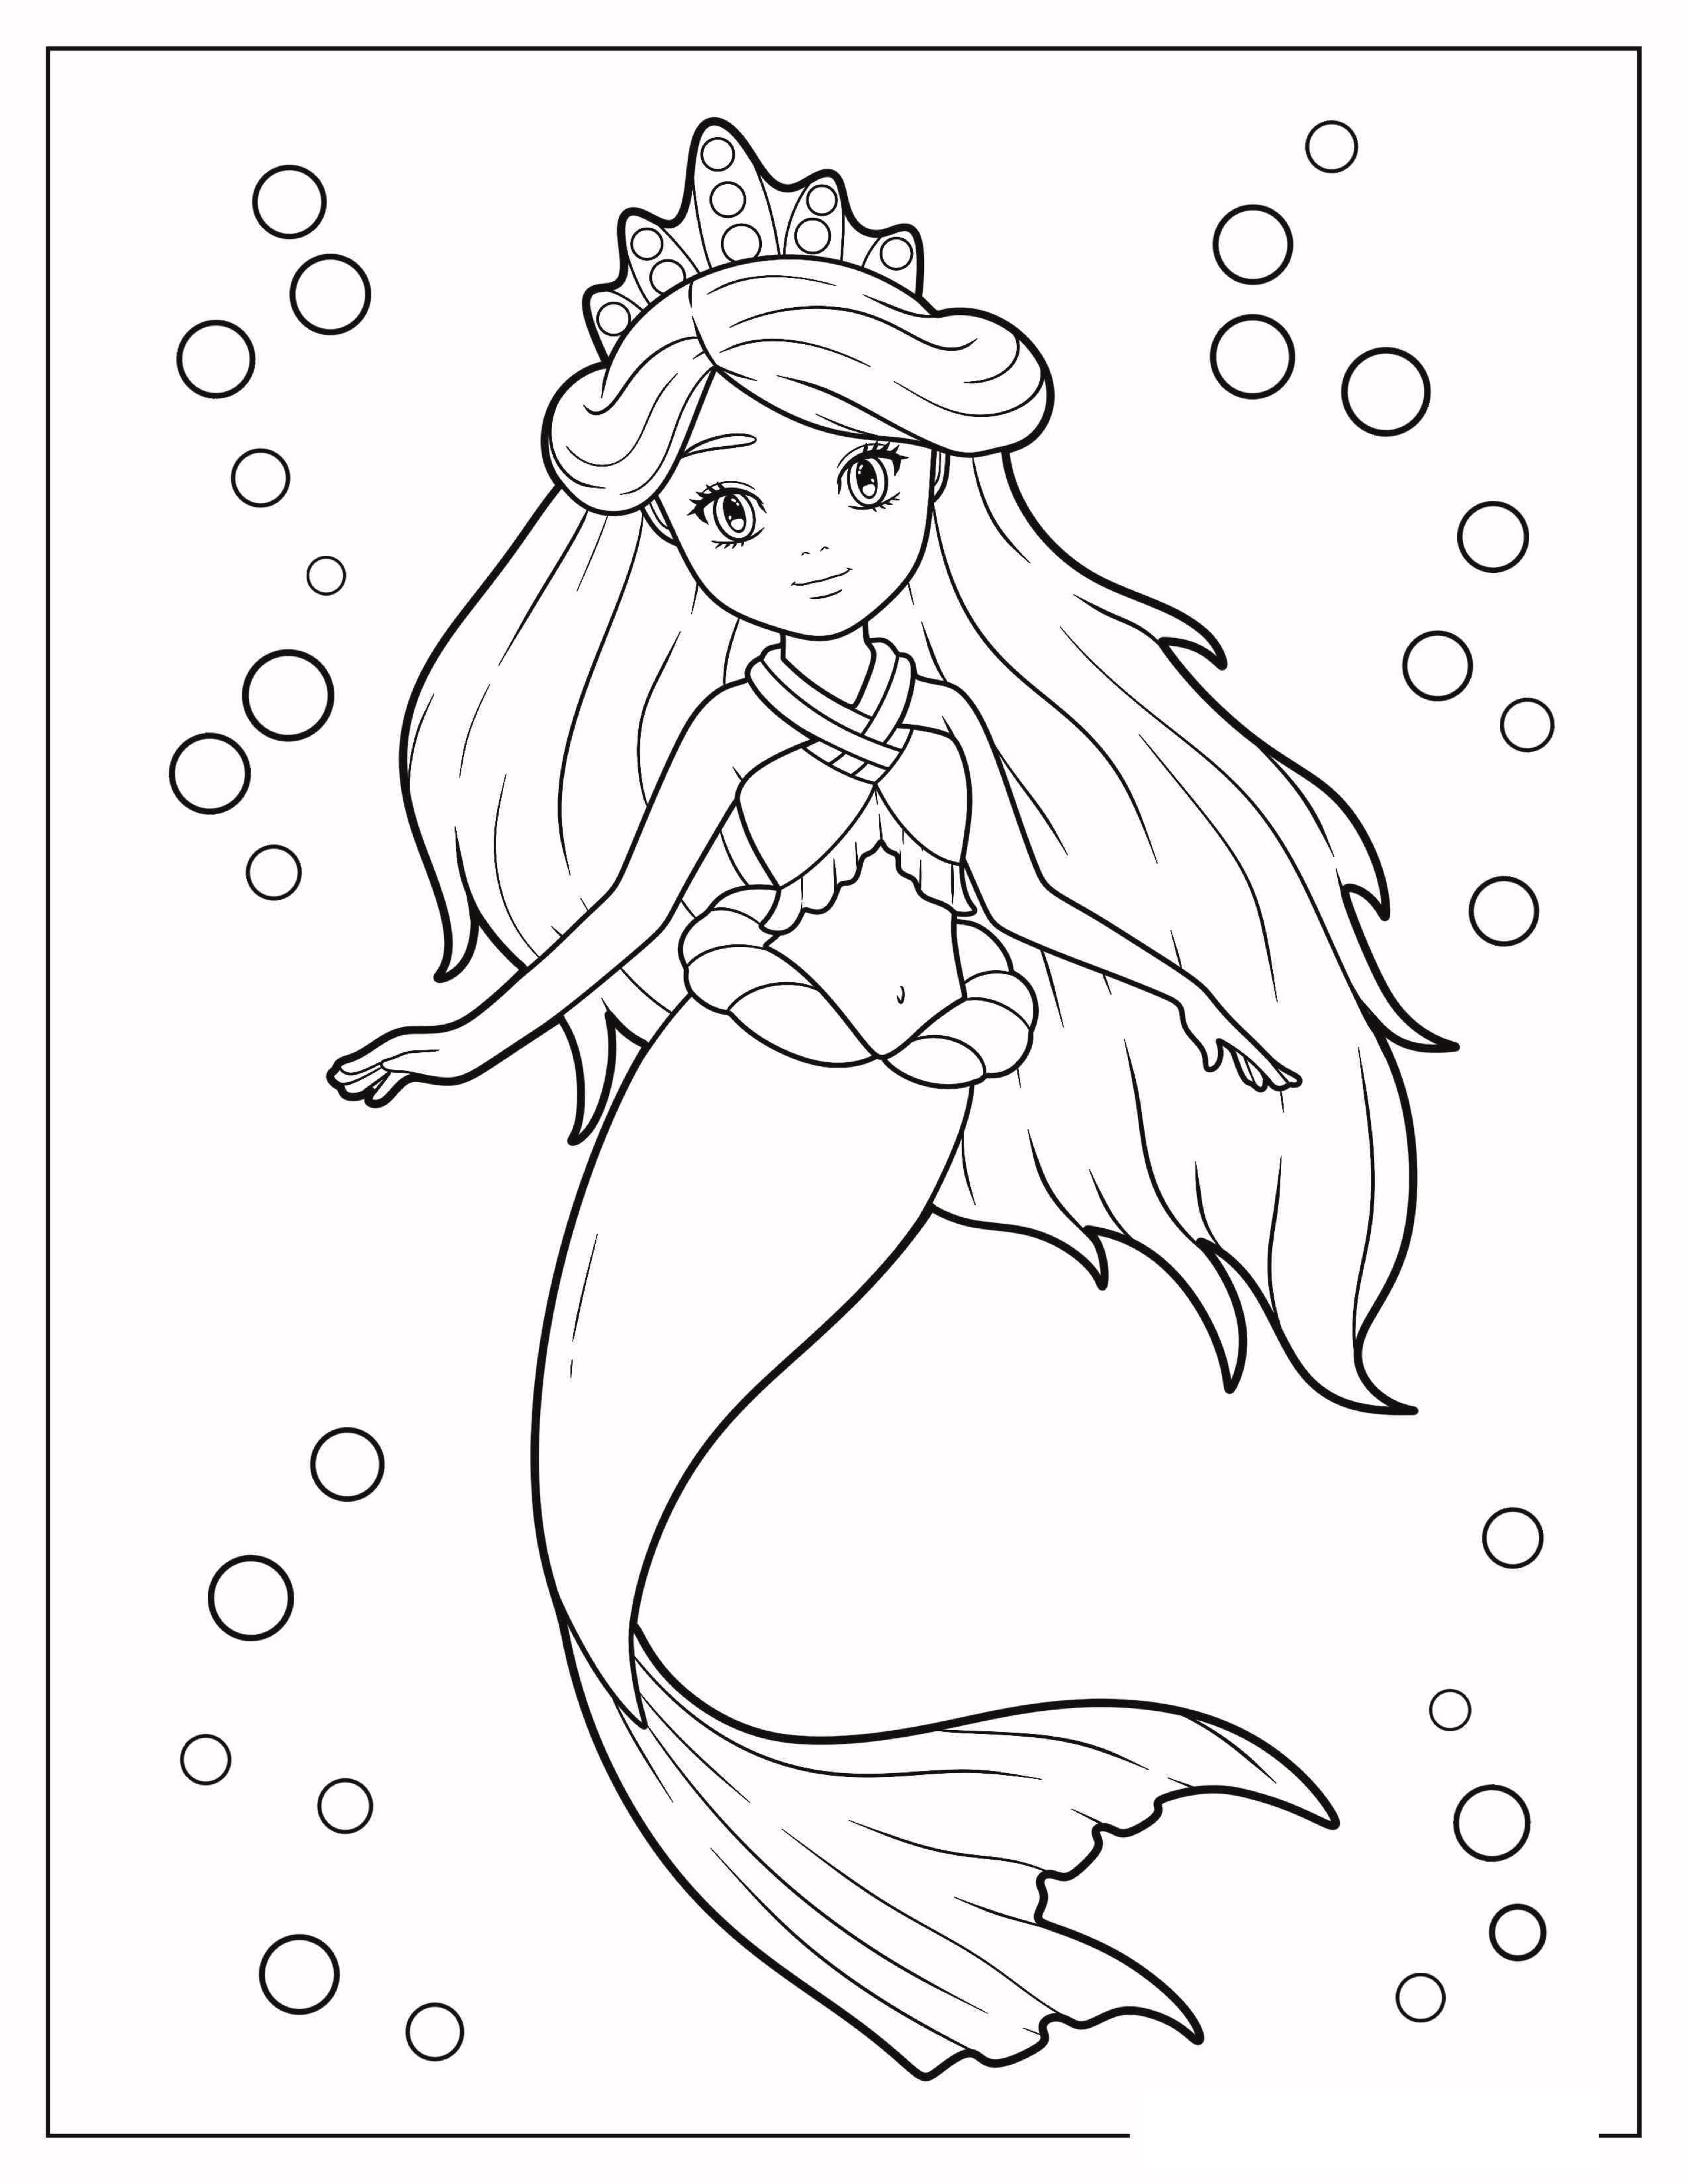 Princess-Mermaid-Coloring-Page.jpg